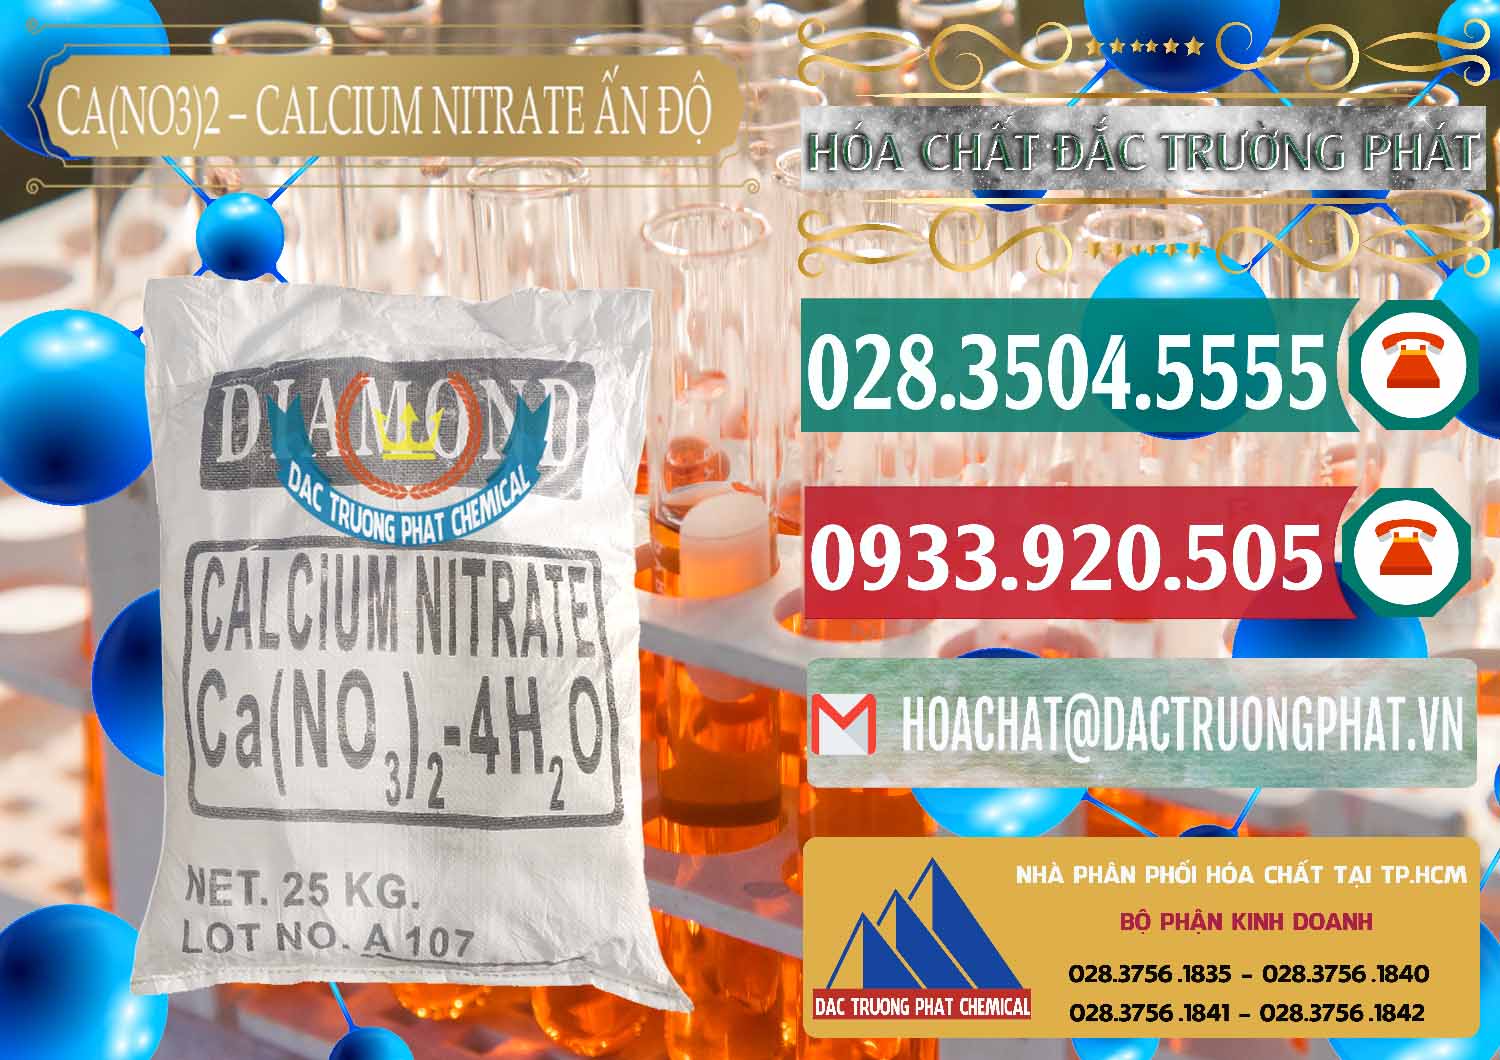 Công ty chuyên bán và cung cấp CA(NO3)2 – Calcium Nitrate Ấn Độ India - 0038 - Nơi chuyên bán _ cung cấp hóa chất tại TP.HCM - muabanhoachat.vn